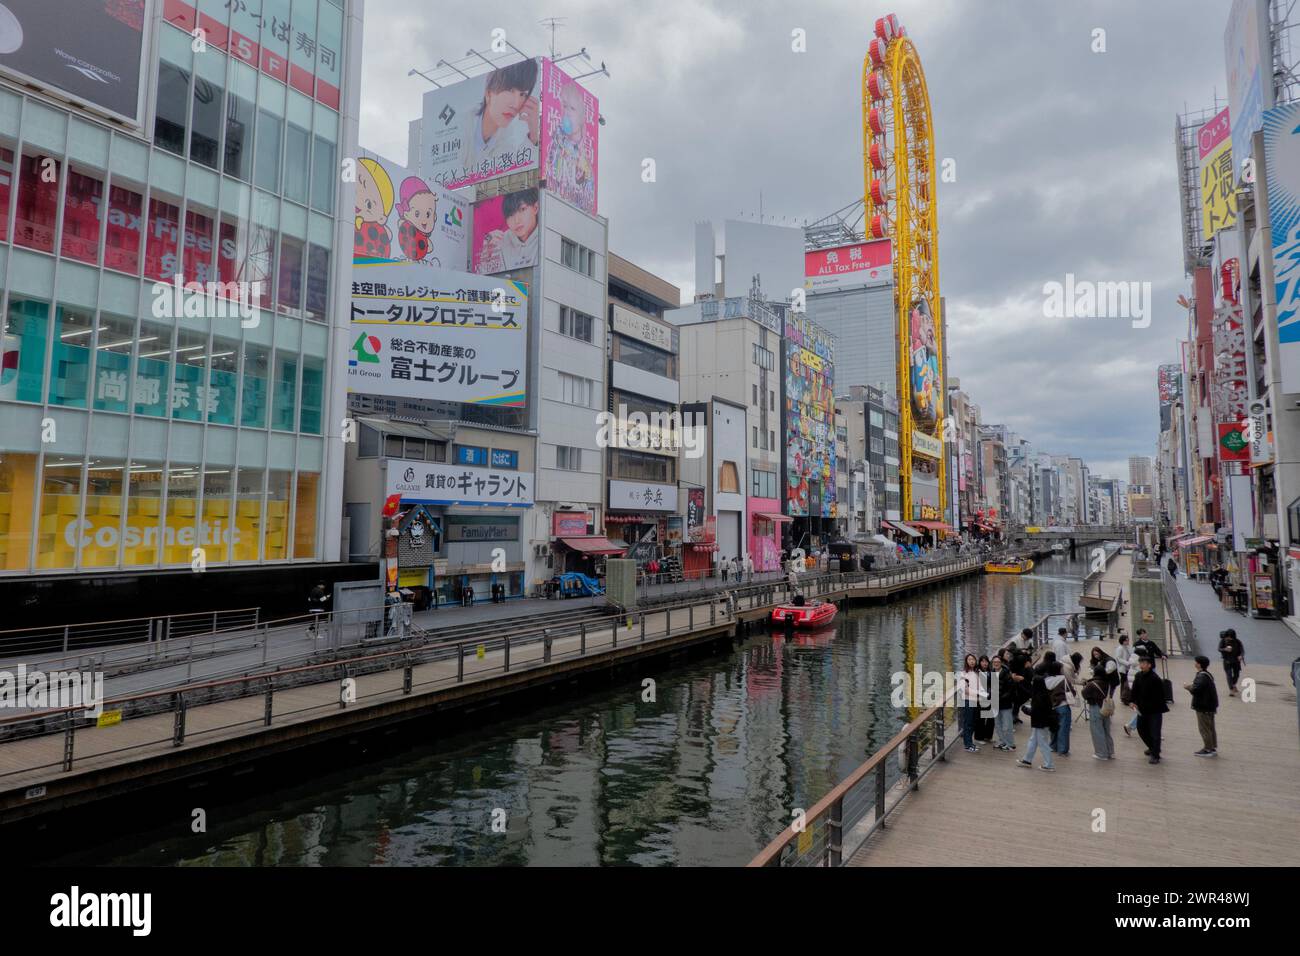 Promenade sur la rivière Tonbori et canal, Dotombori (Dotonbori), Osaka, Japon Banque D'Images